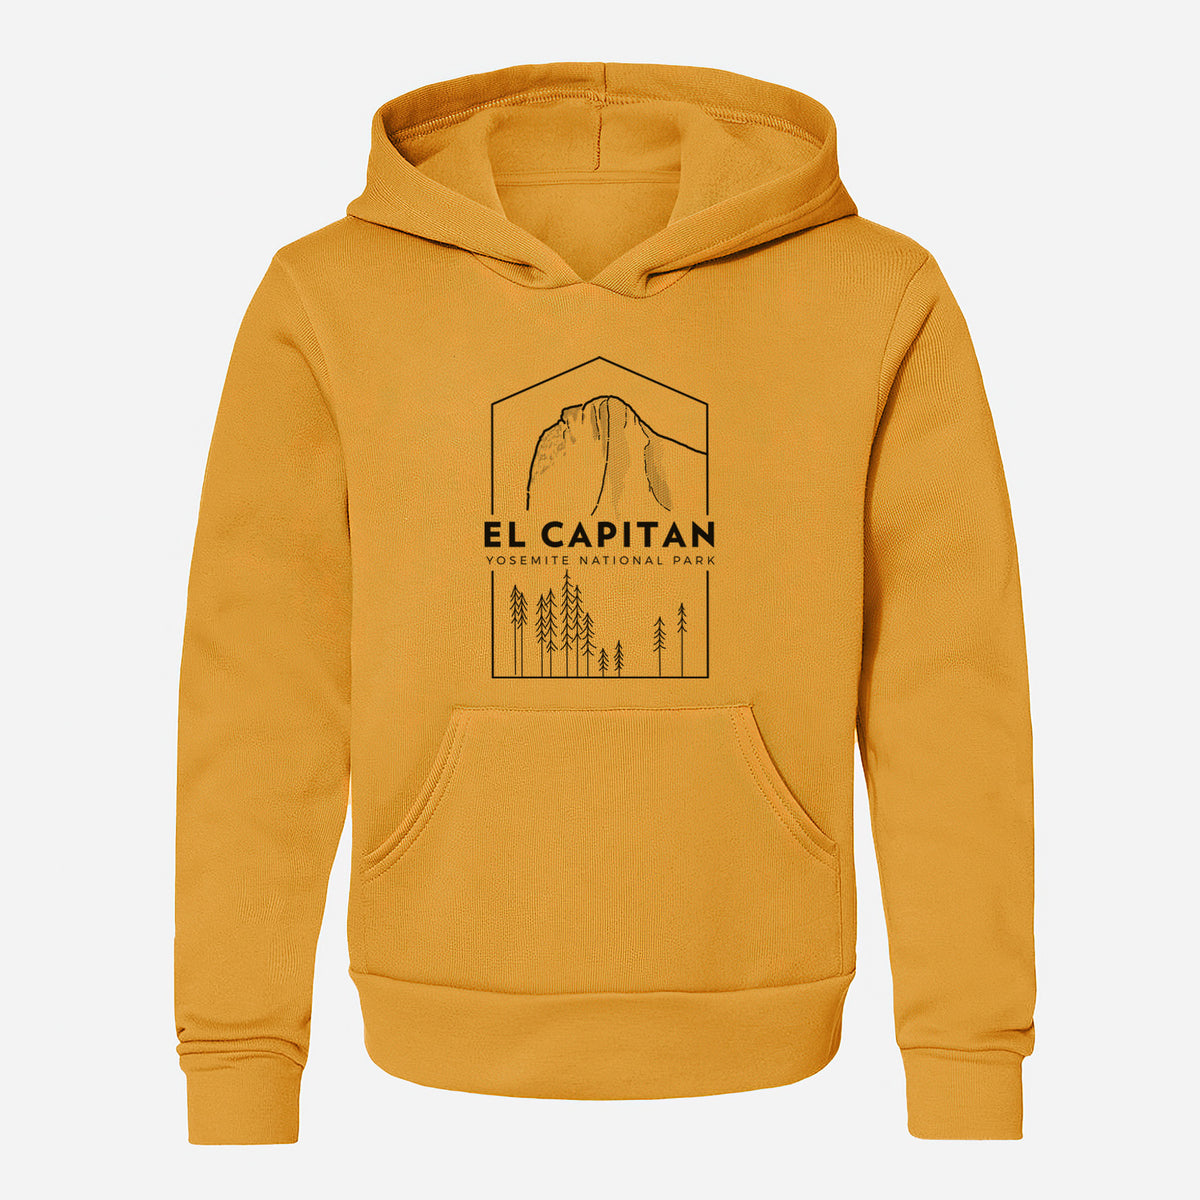 El Capitan - Yosemite National Park - Youth Hoodie Sweatshirt